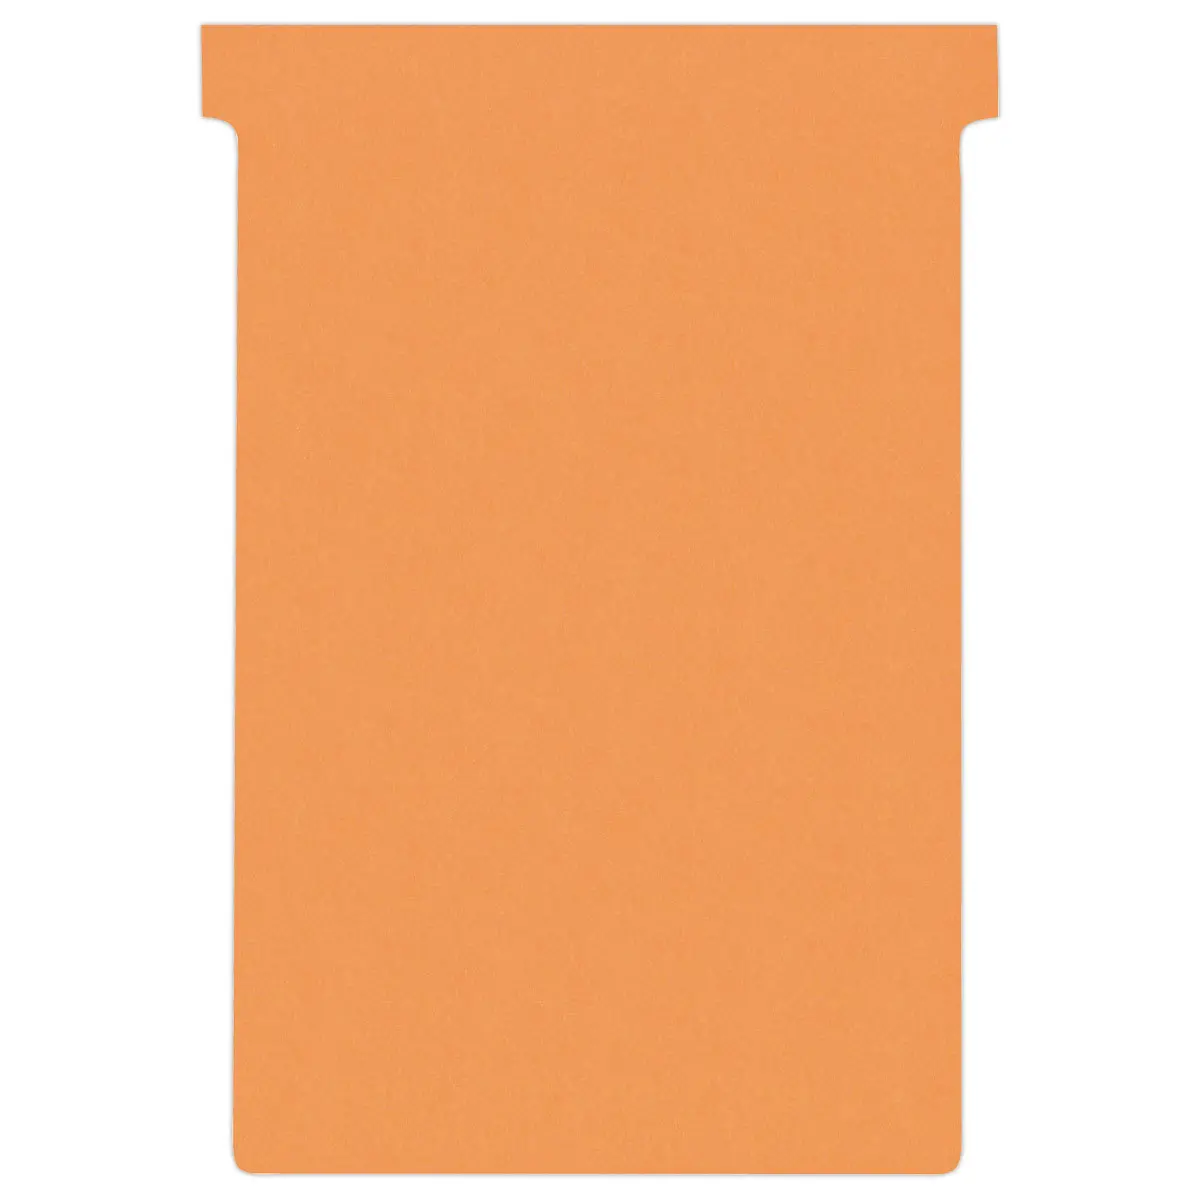 100 Fiches T pour planning - Taille 4 - Orange - NOBO photo du produit